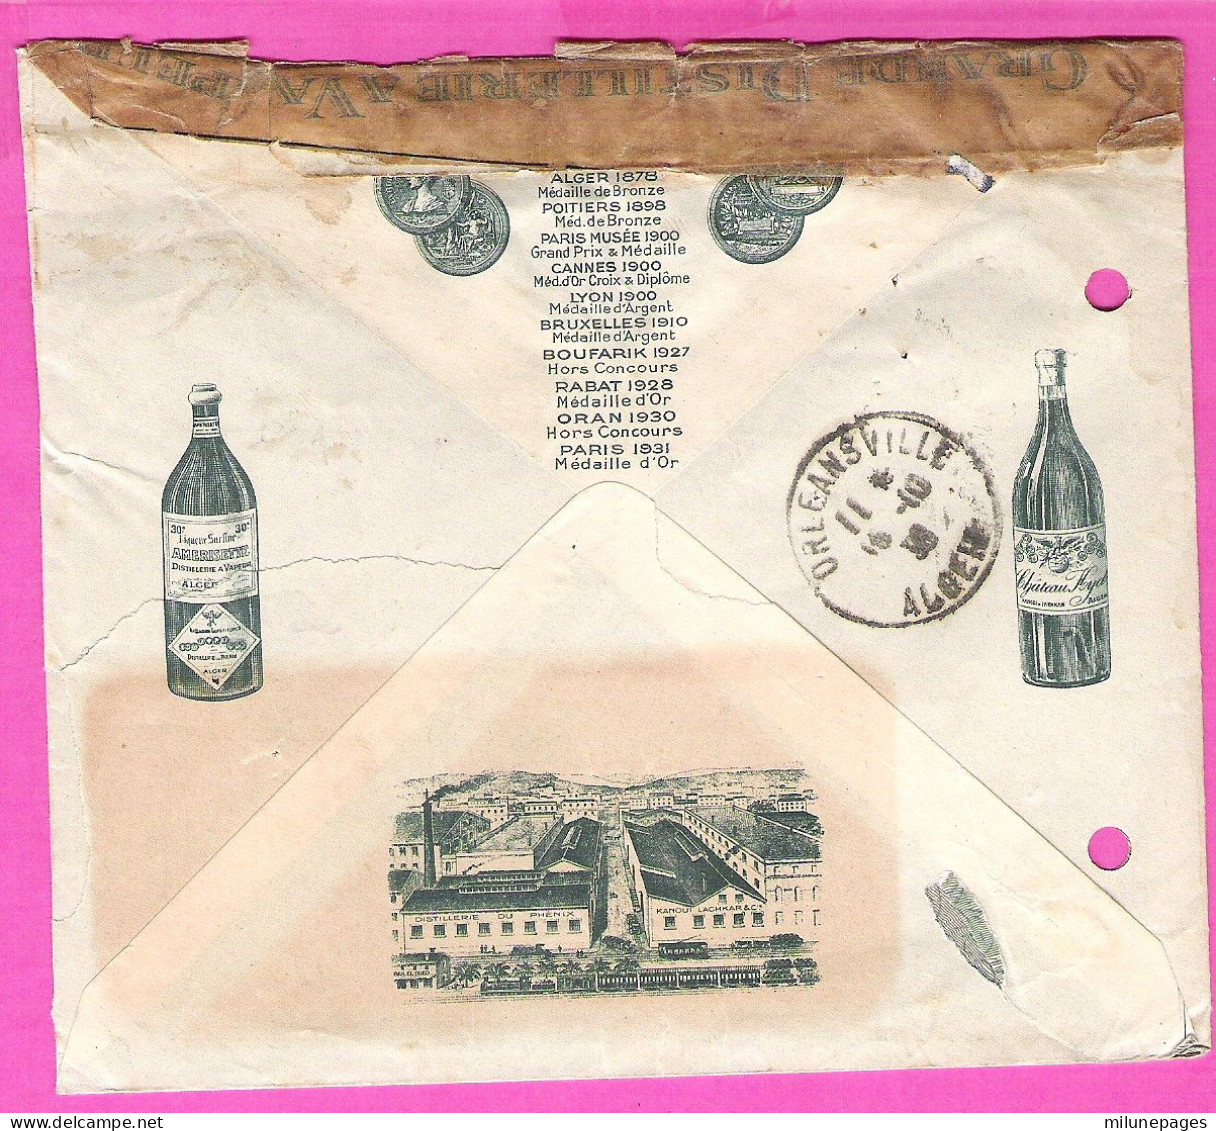 Enveloppe Illustrée Pour L'Anisette Du Phénix Kanoui, Lachkar & Cie à Alger En 1936 - Levensmiddelen